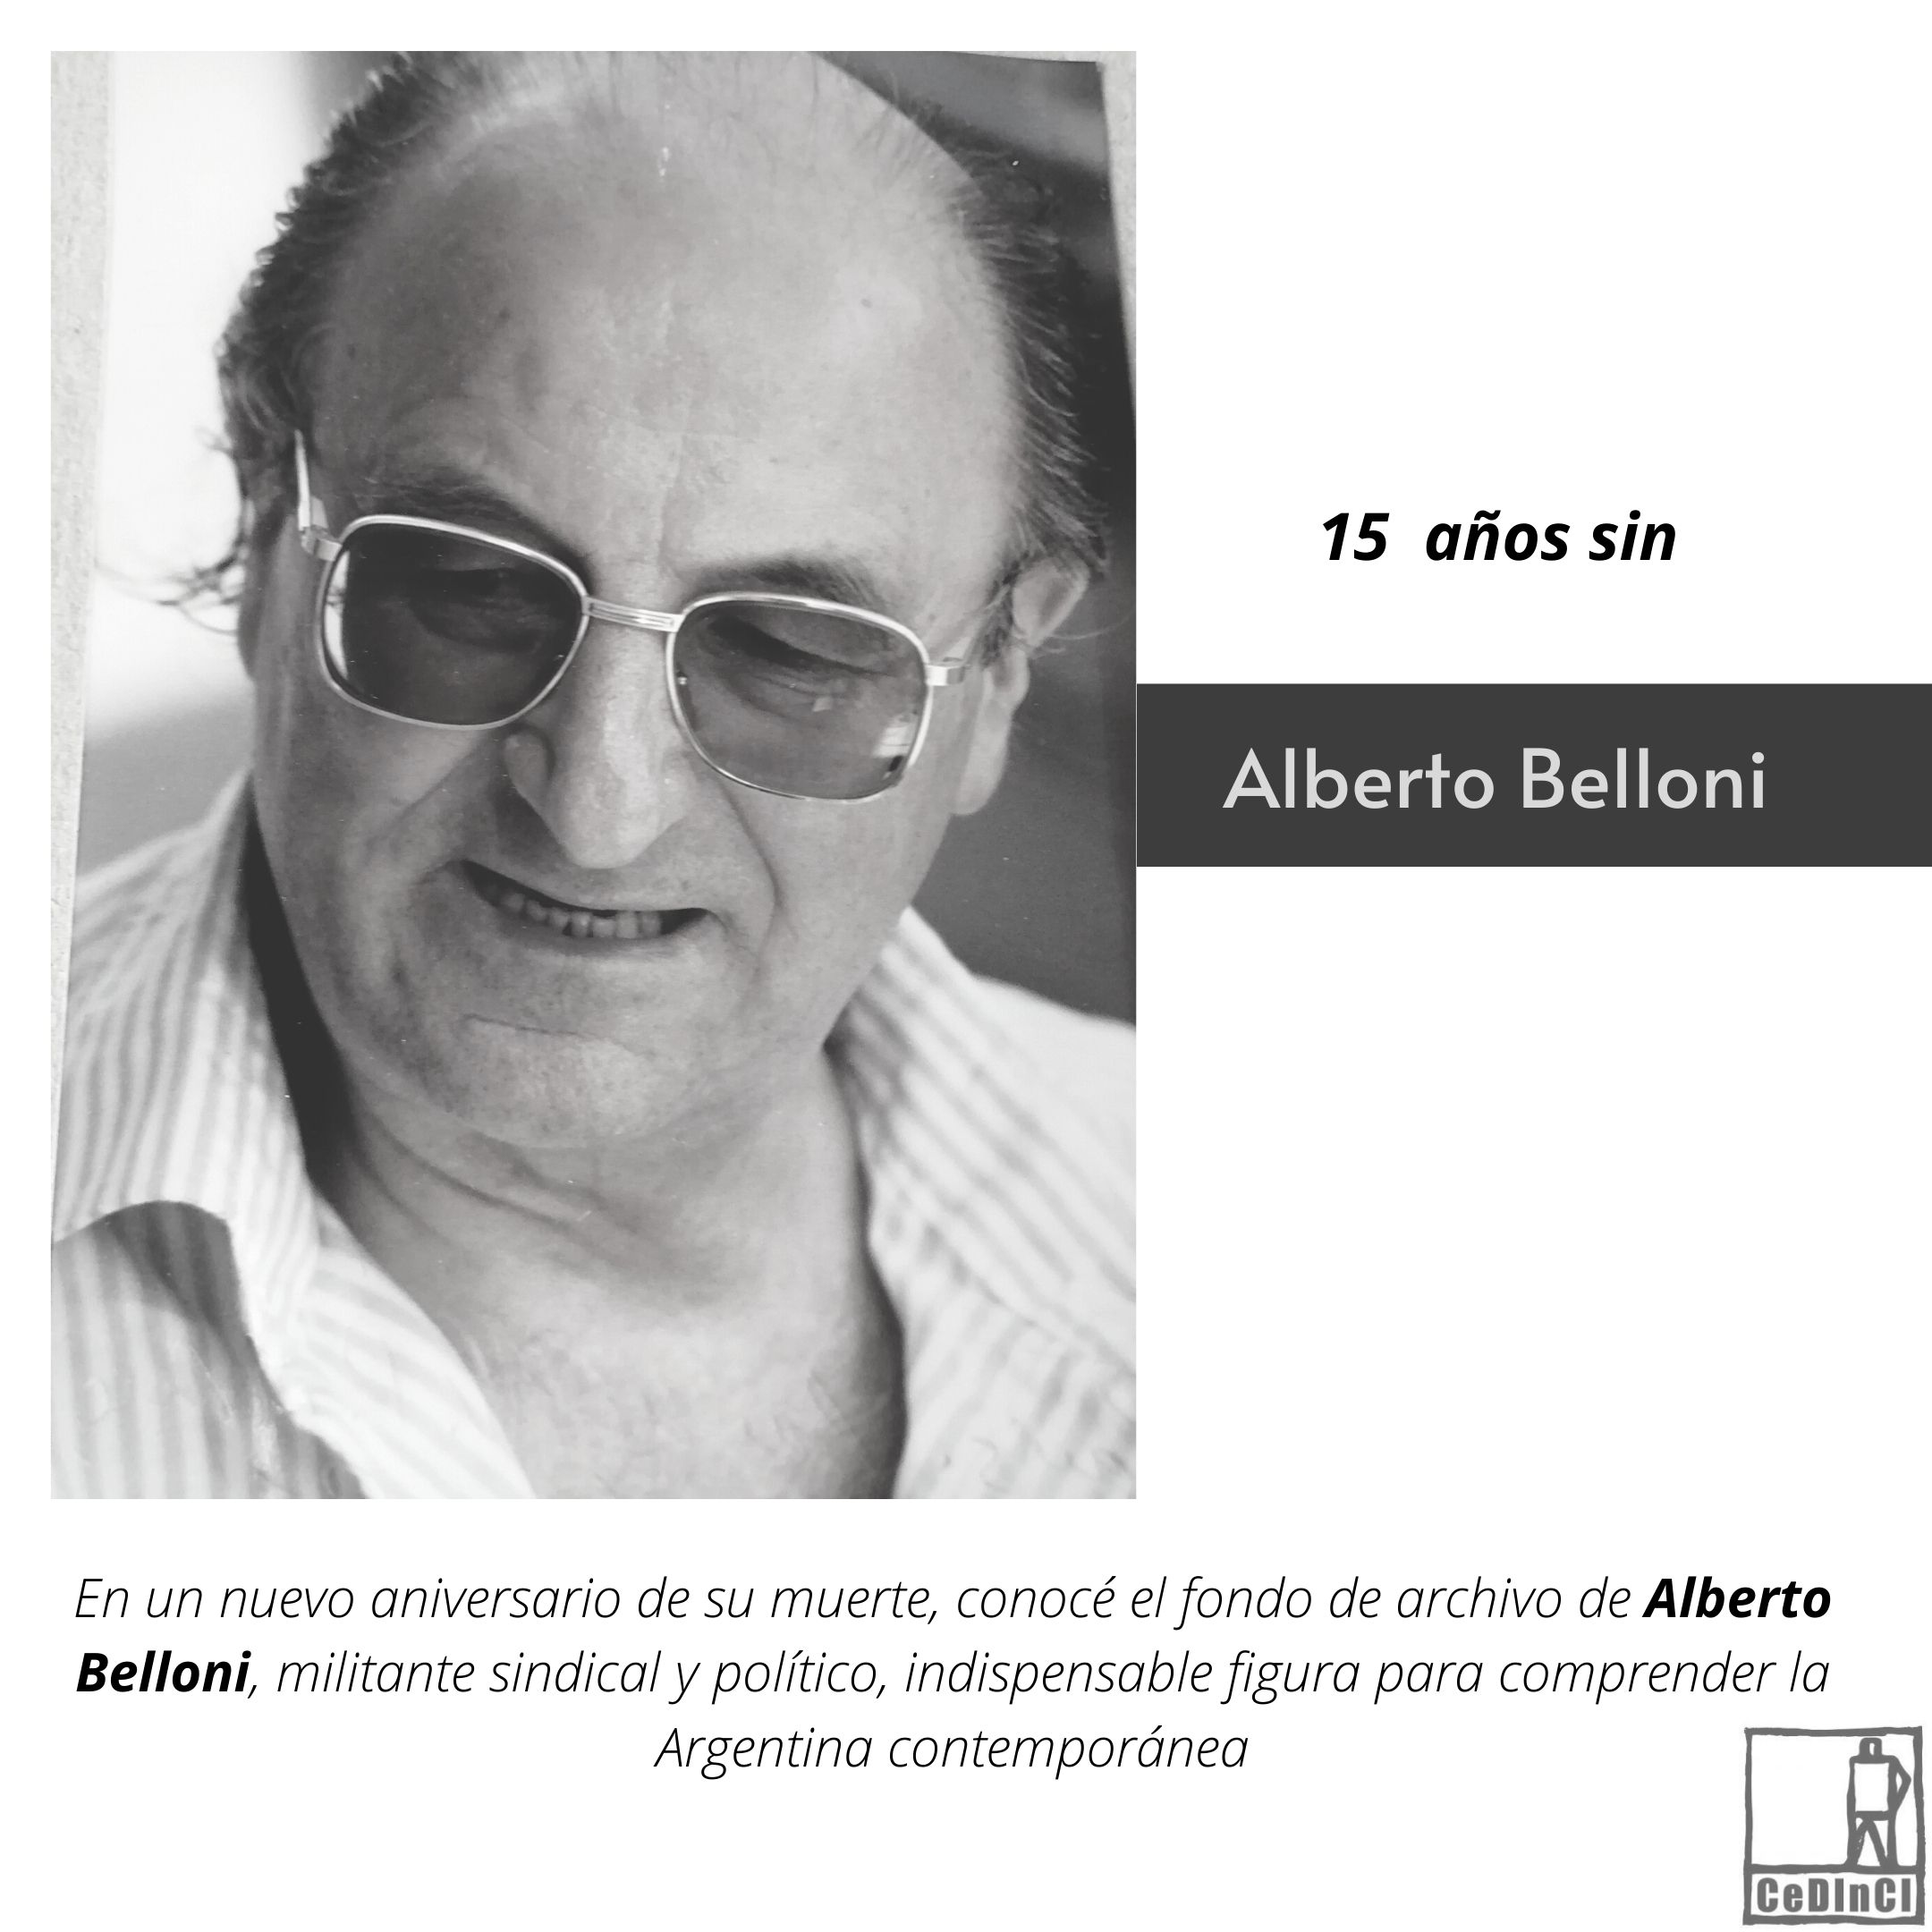 Alberto Belloni, semblanza de un militante sindical y político indispensable